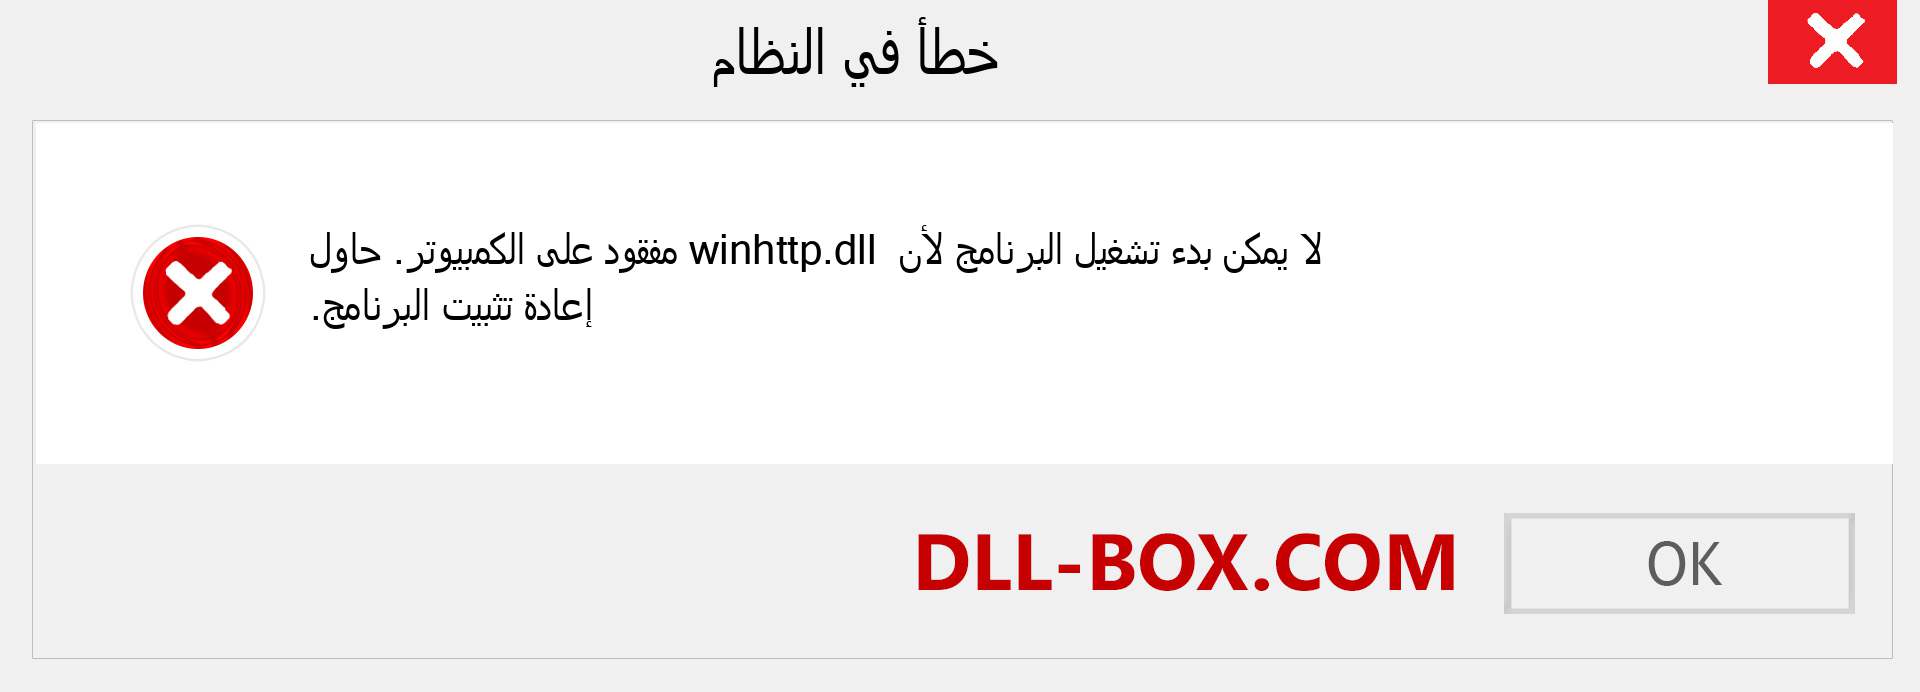 ملف winhttp.dll مفقود ؟. التنزيل لنظام التشغيل Windows 7 و 8 و 10 - إصلاح خطأ winhttp dll المفقود على Windows والصور والصور